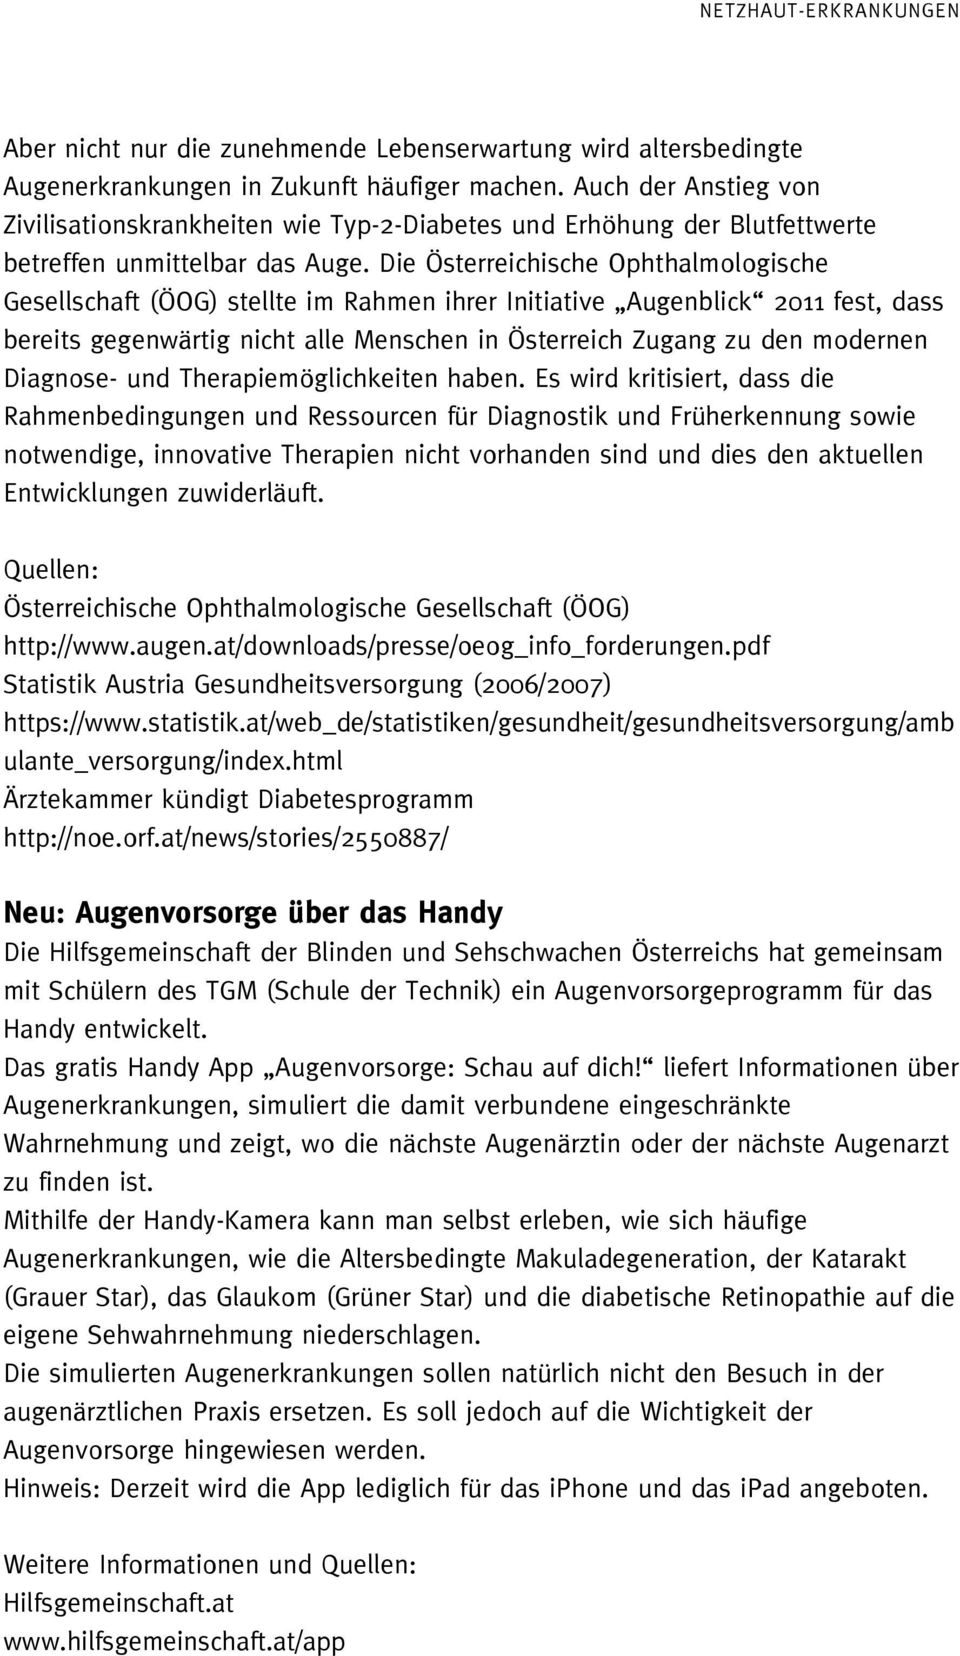 Die Österreichische Ophthalmologische Gesellschaft (ÖOG) stellte im Rahmen ihrer Initiative Augenblick 2011 fest, dass bereits gegenwärtig nicht alle Menschen in Österreich Zugang zu den modernen